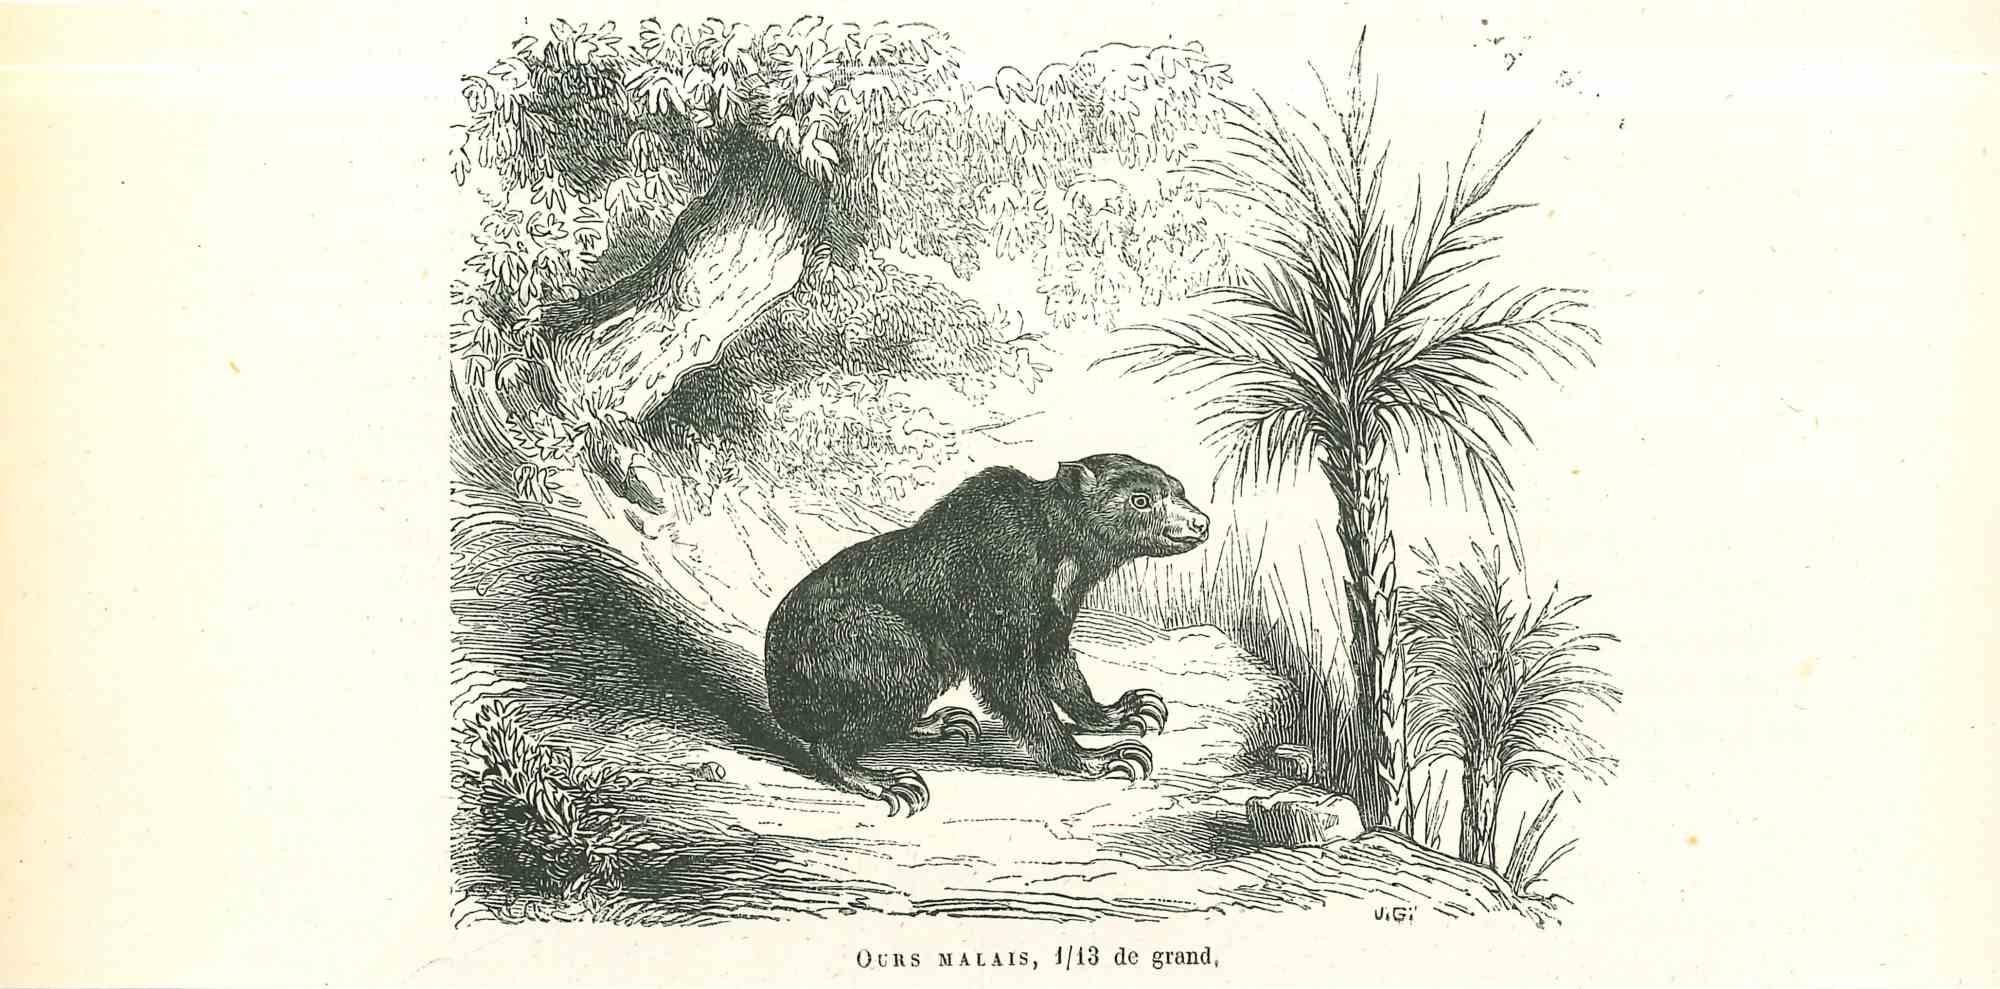 Der Bär ist eine Originallithografie auf elfenbeinfarbenem Papier, die von Paul Gervais (1816-1879) geschaffen wurde. Das Kunstwerk stammt aus der Serie "Les Trois Règnes de la Nature" und wurde 1854 veröffentlicht.

Gute Bedingungen.

Auf der